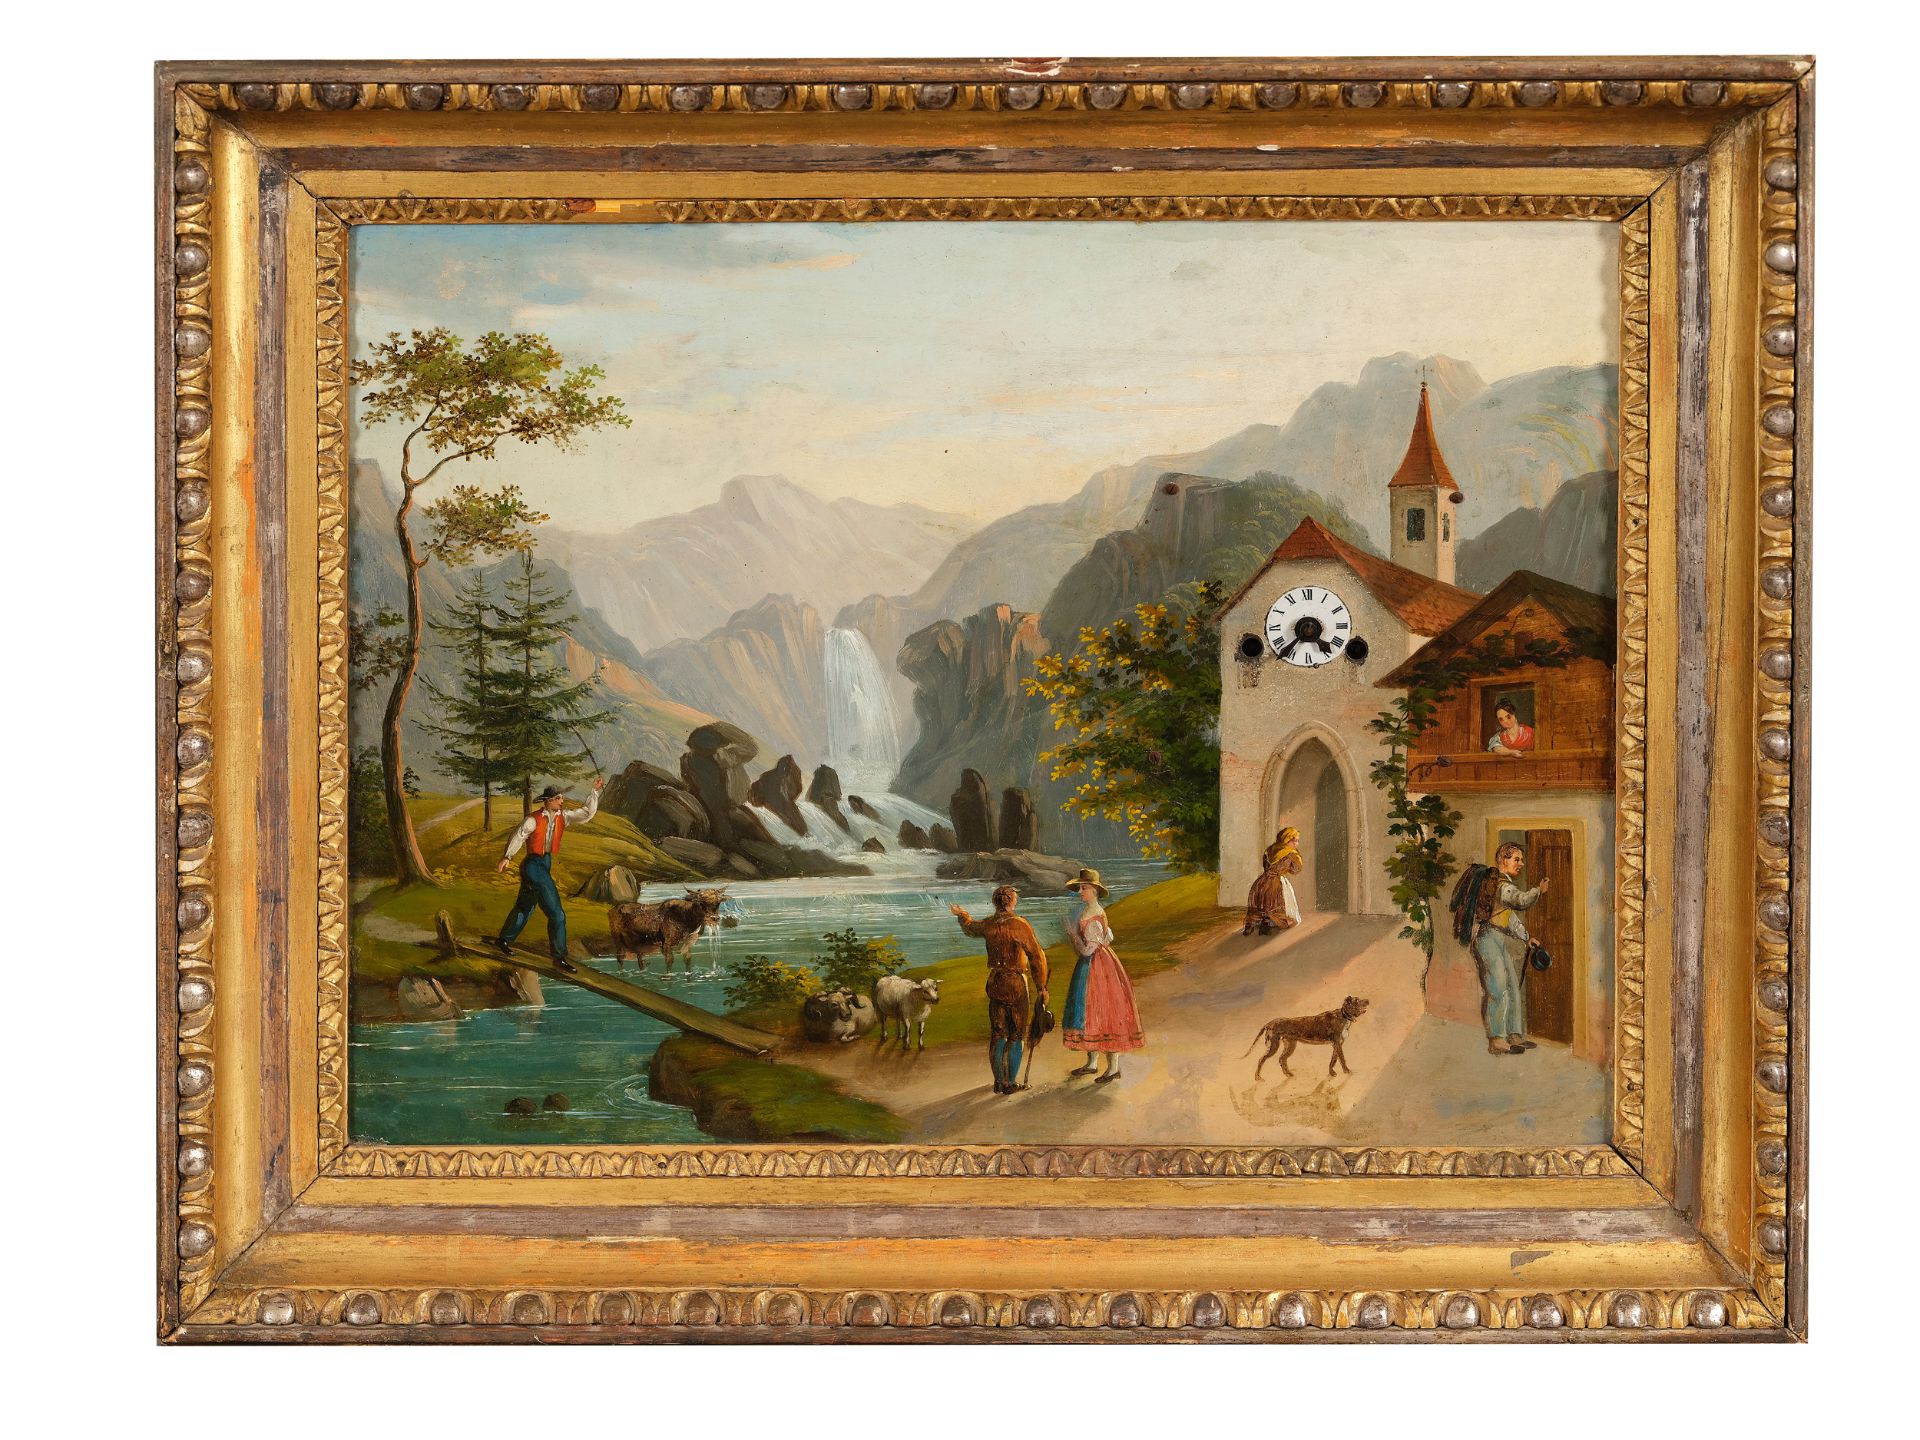 Bilderuhr, Wien um 1830, Motiv aus den Alpen